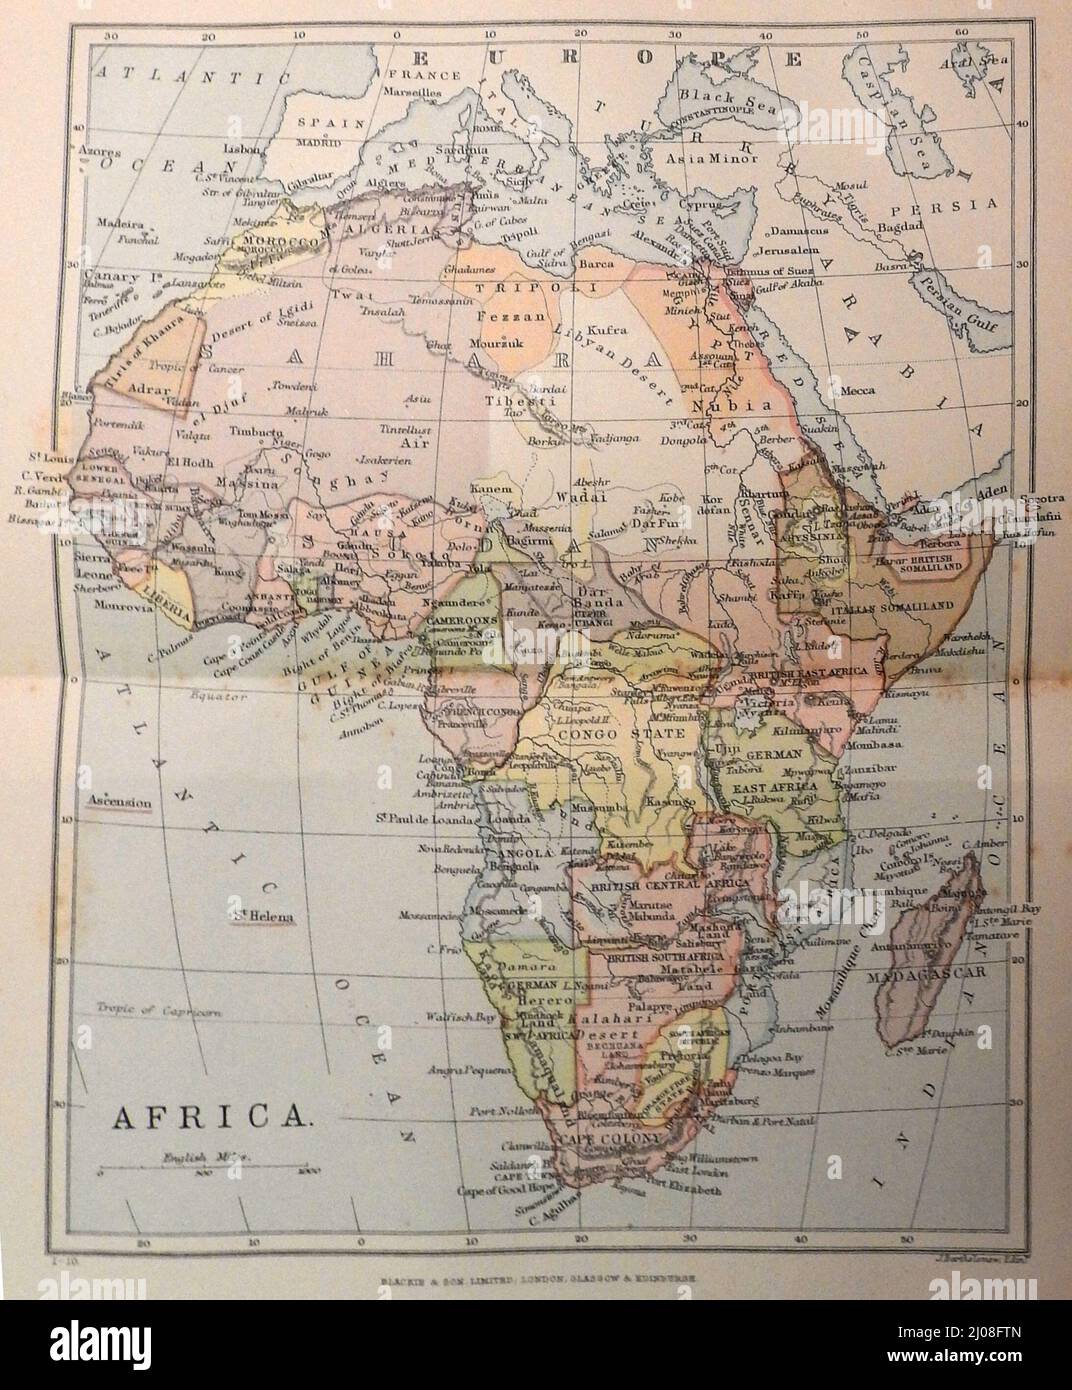 Un mapa de África de finales del siglo 19th que muestra muchos antiguos nombres y fronteras / fronteras. Foto de stock